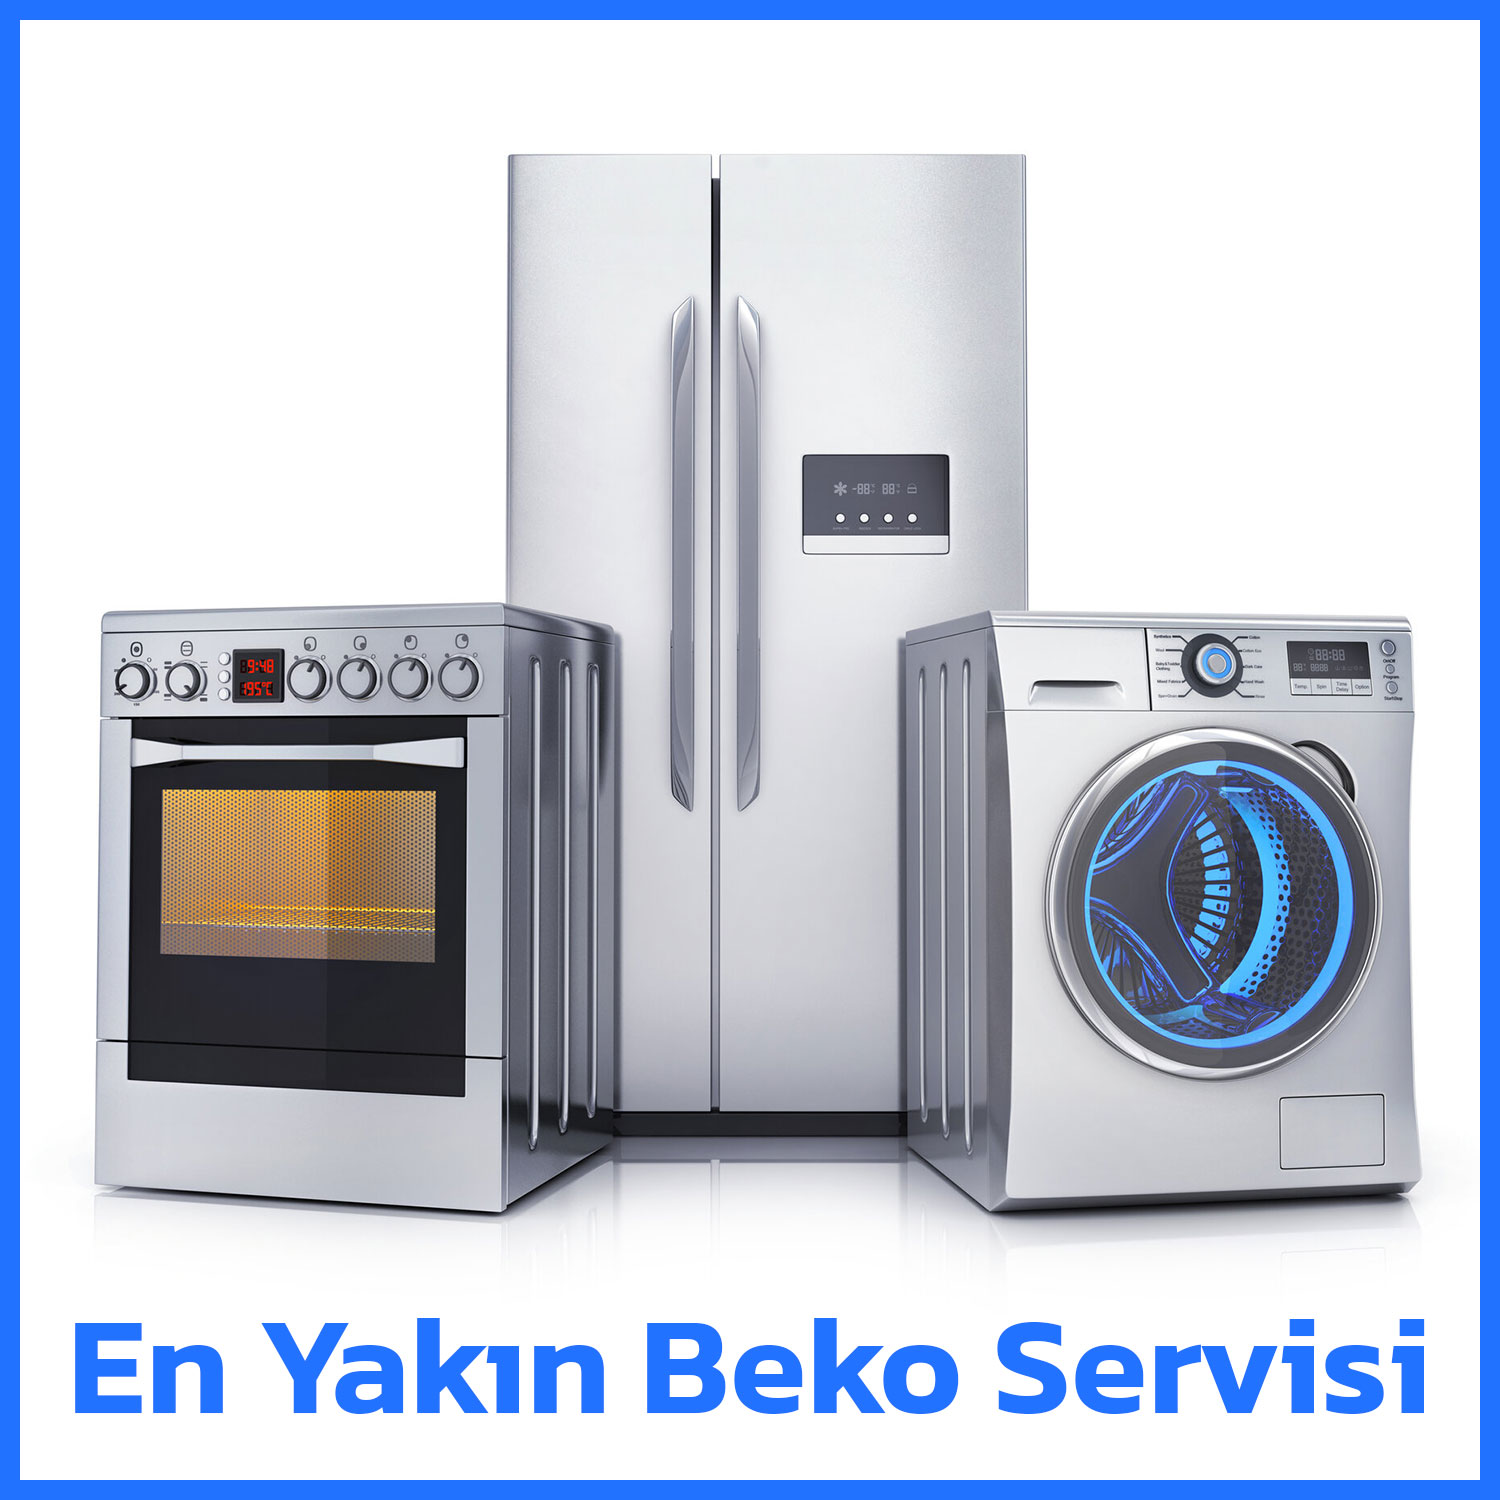 En Yakın Beko Servisi Kaplan Beyaz Eşya Buzdolabı, Çamaşır Makinesi, Bulaşık Makinesi Tamircisi, kayseri beko servisi